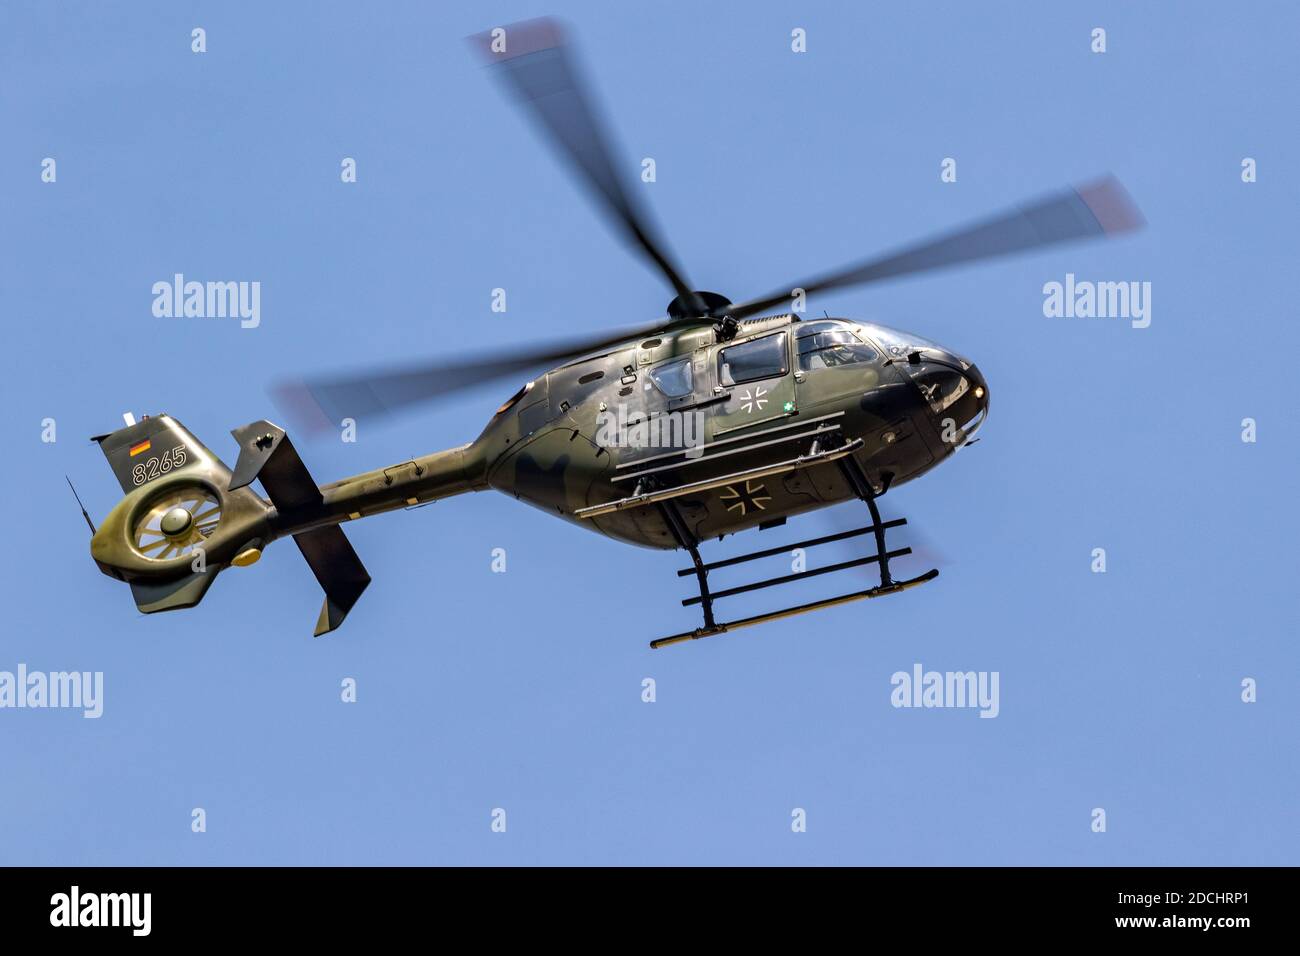 Hélicoptère utilitaire militaire de l'armée allemande Airbus H135 en vol au-dessus de la base aérienne de Wunstorf. Allemagne - 9 juin 2018 Banque D'Images